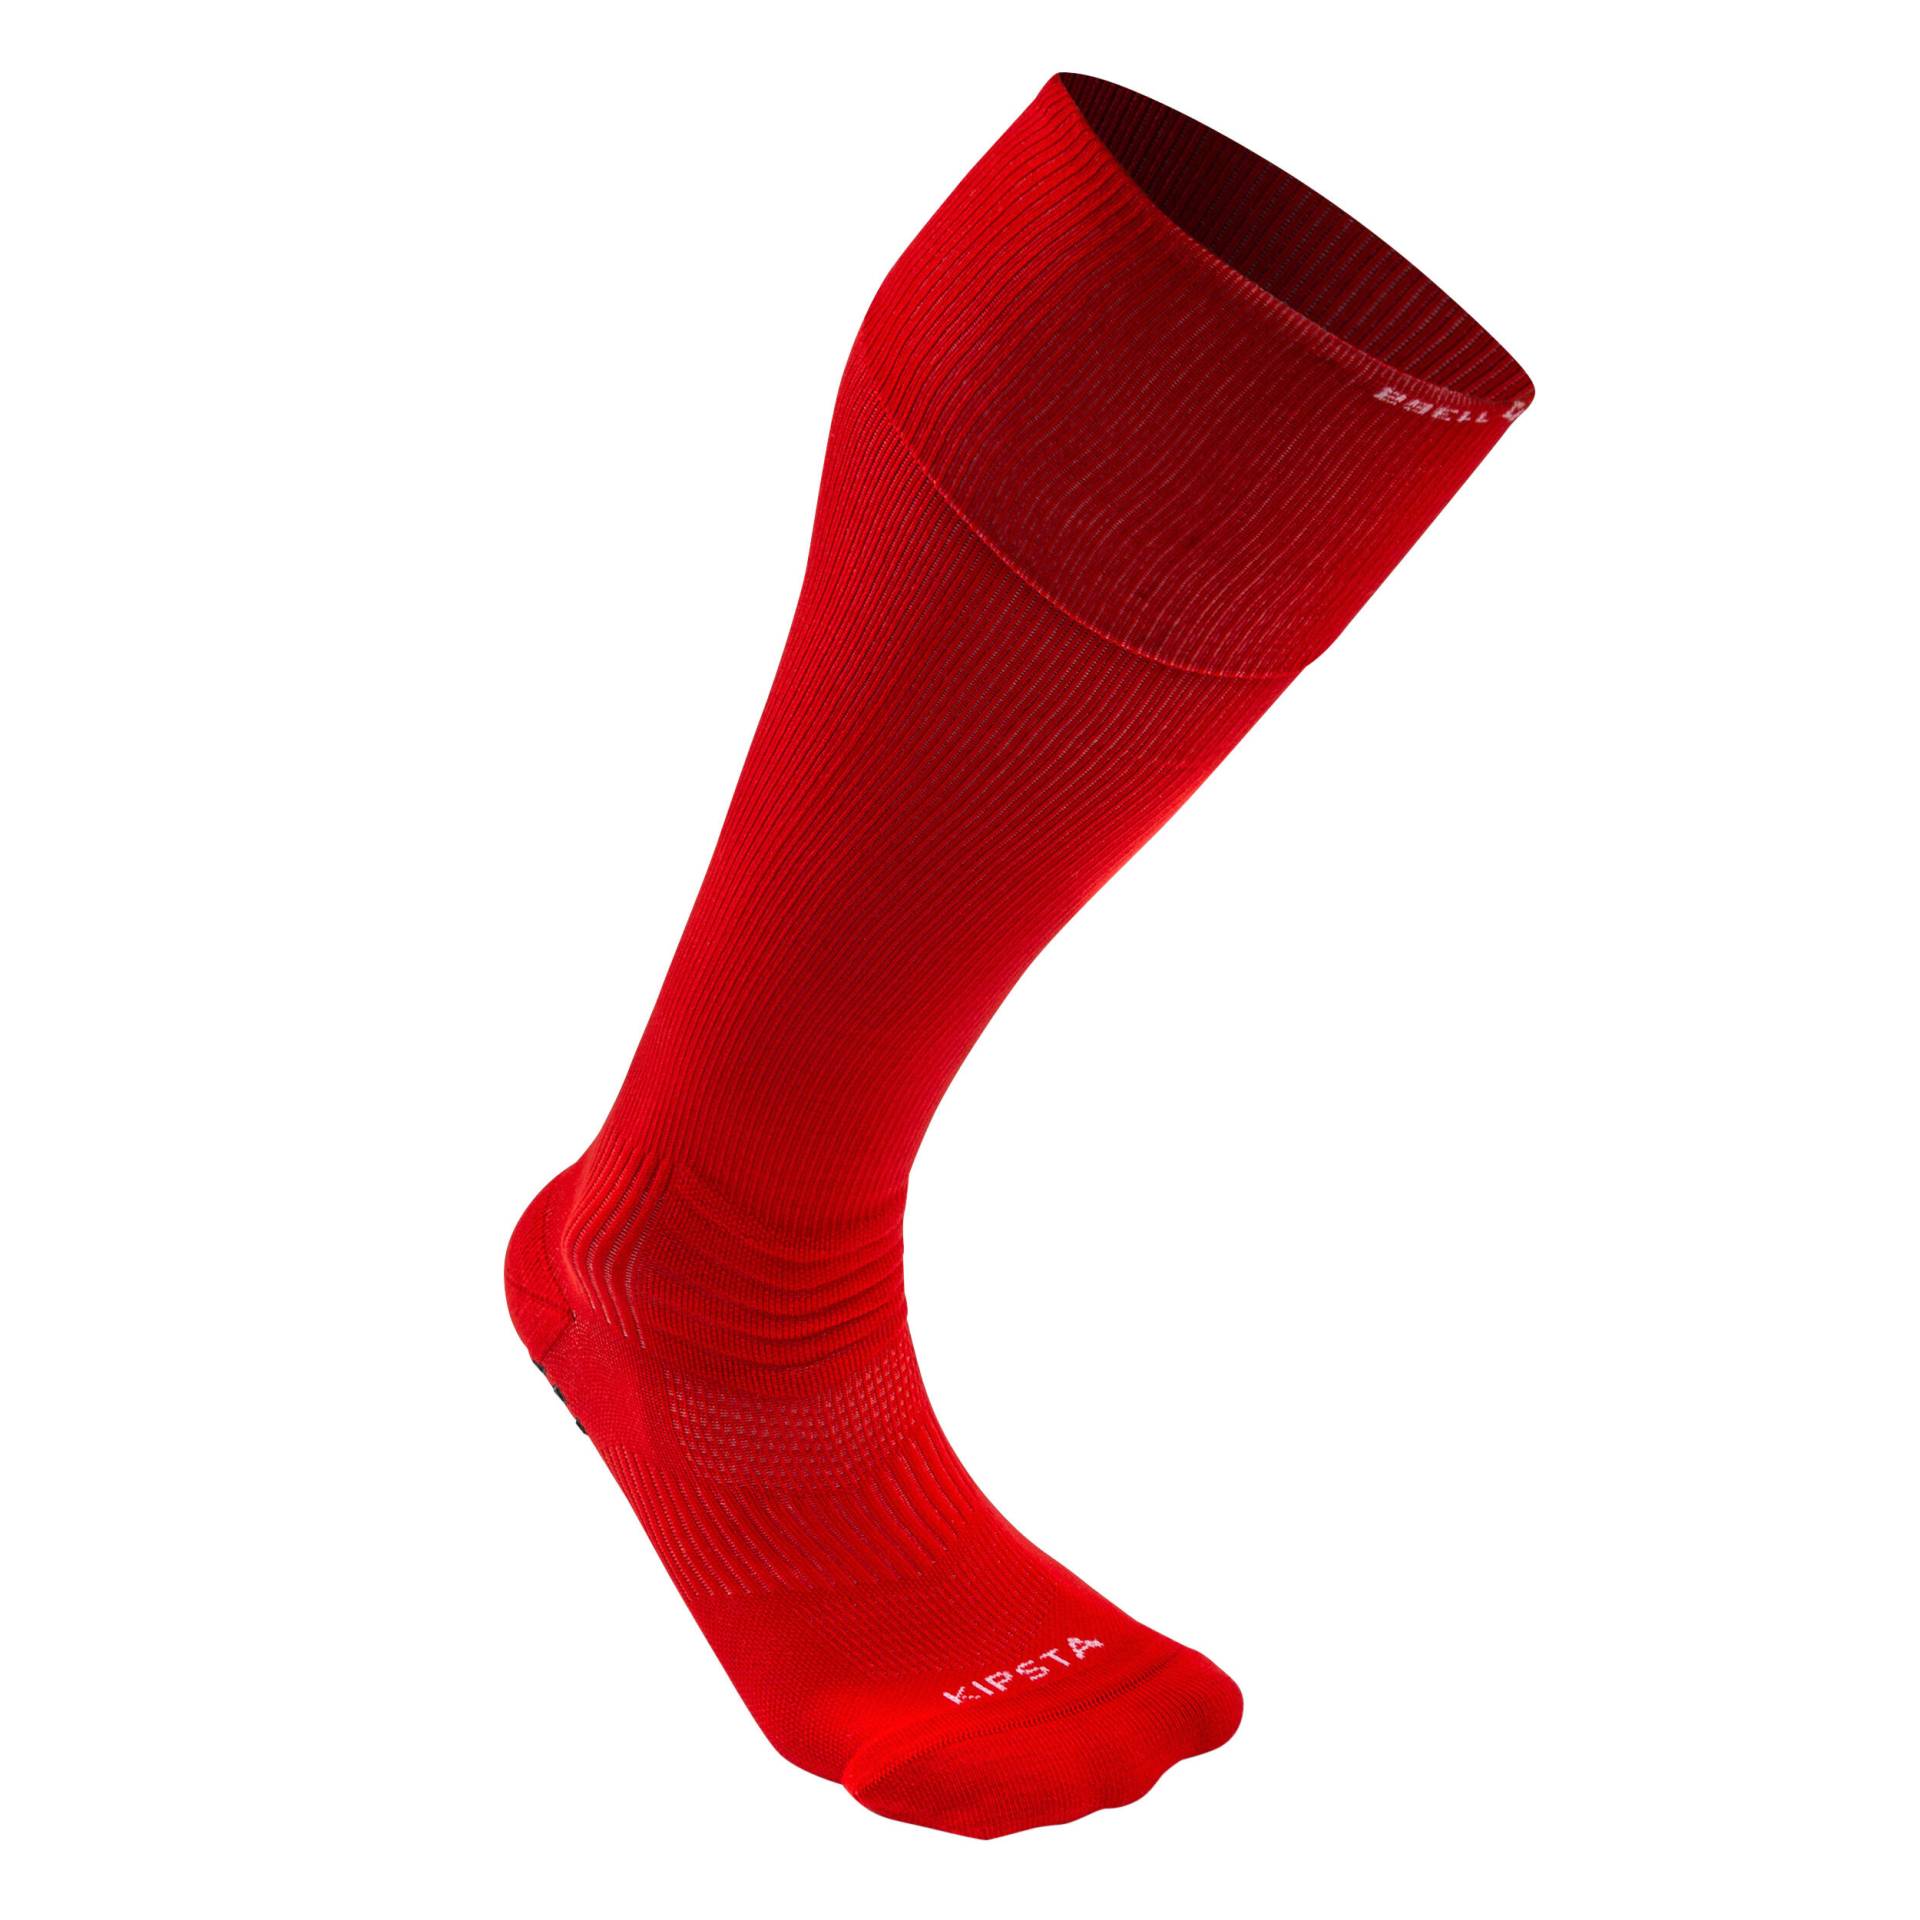 Damen/Herren Fussball Stutzen hoch mit rutschfesten Socken - Viralto II rot von KIPSTA